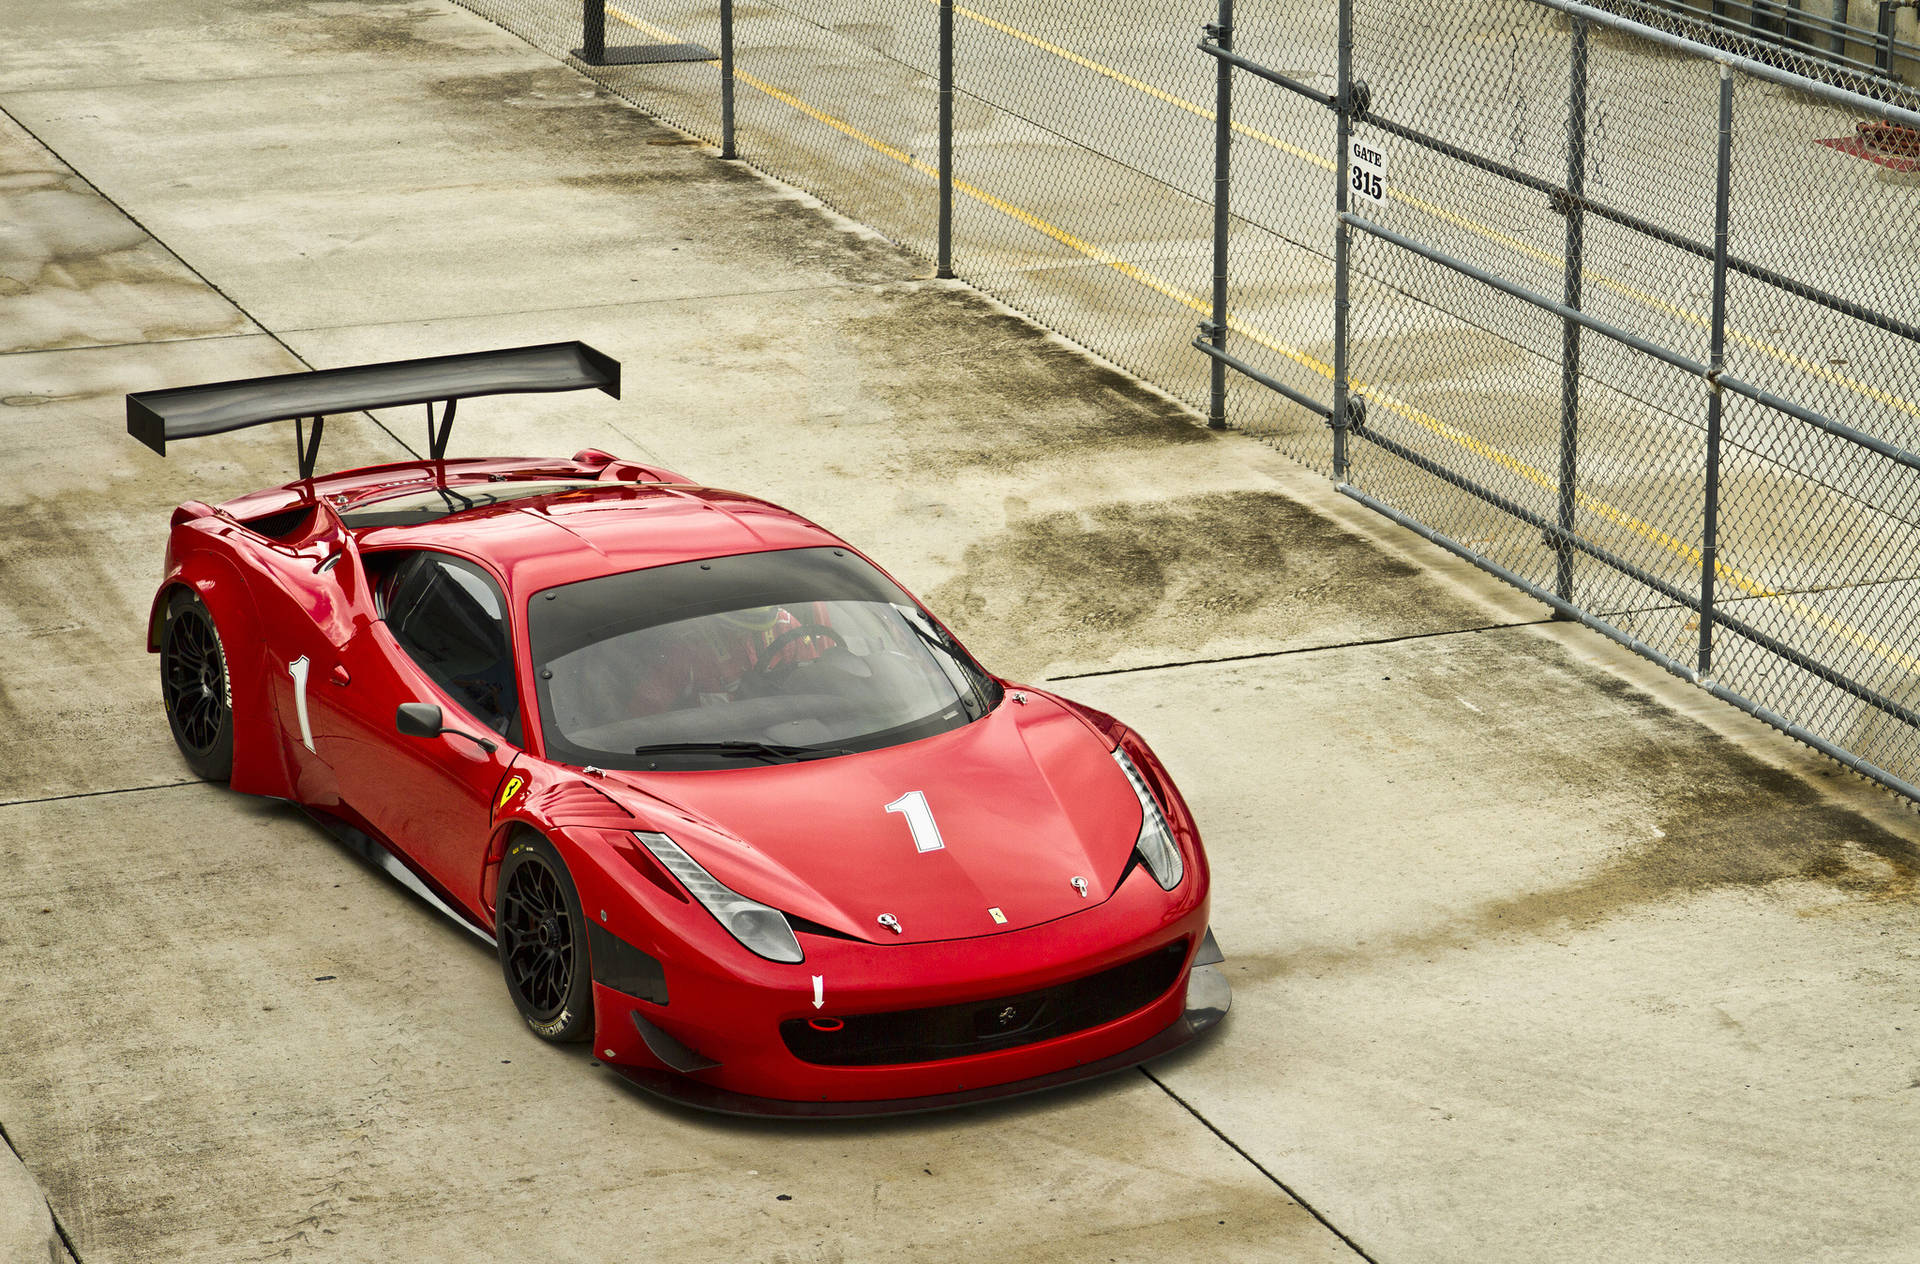 4k Ferrari Red Sports Car Background